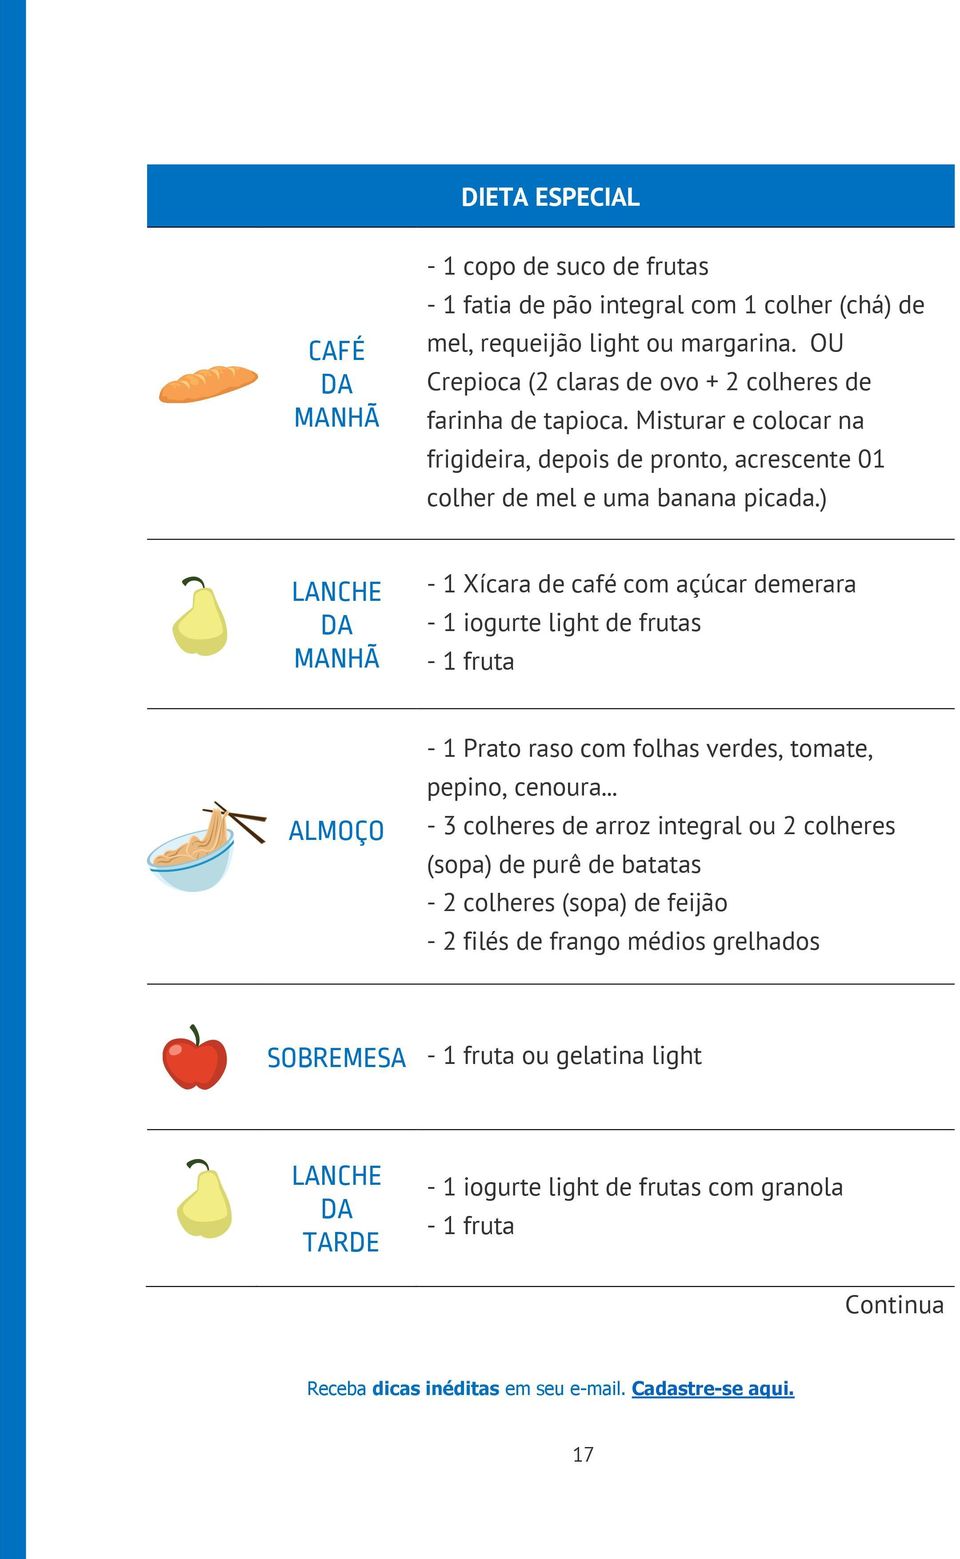 ) LANCHE DA MANHÃ - 1 Xícara de café com açúcar demerara - 1 iogurte light de frutas - 1 fruta ALMOÇO - 1 Prato raso com folhas verdes, tomate, pepino, cenoura.